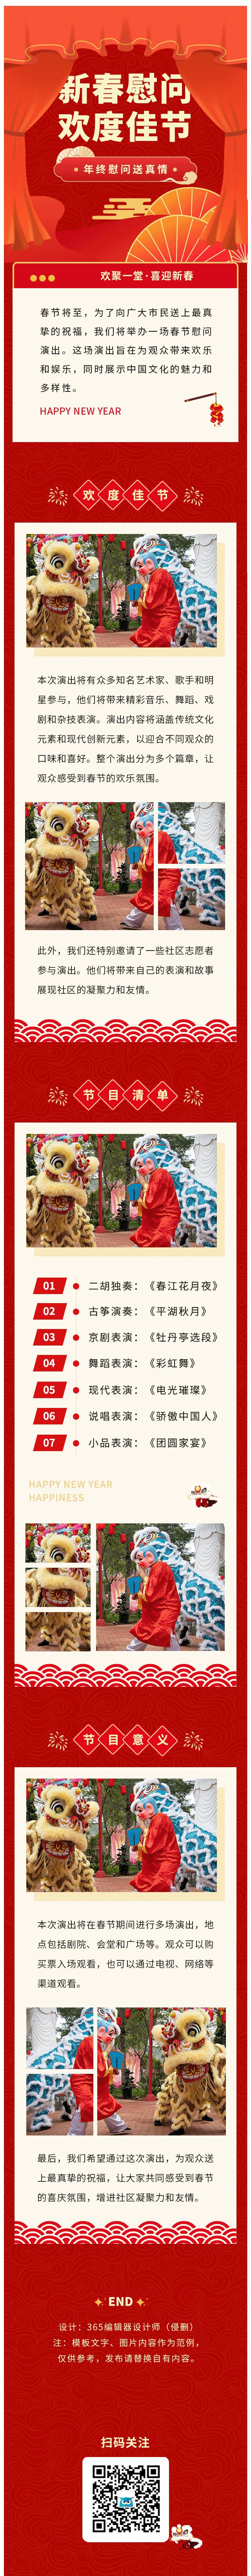 春节慰问演出新年联欢送温暖活动年终活动红色